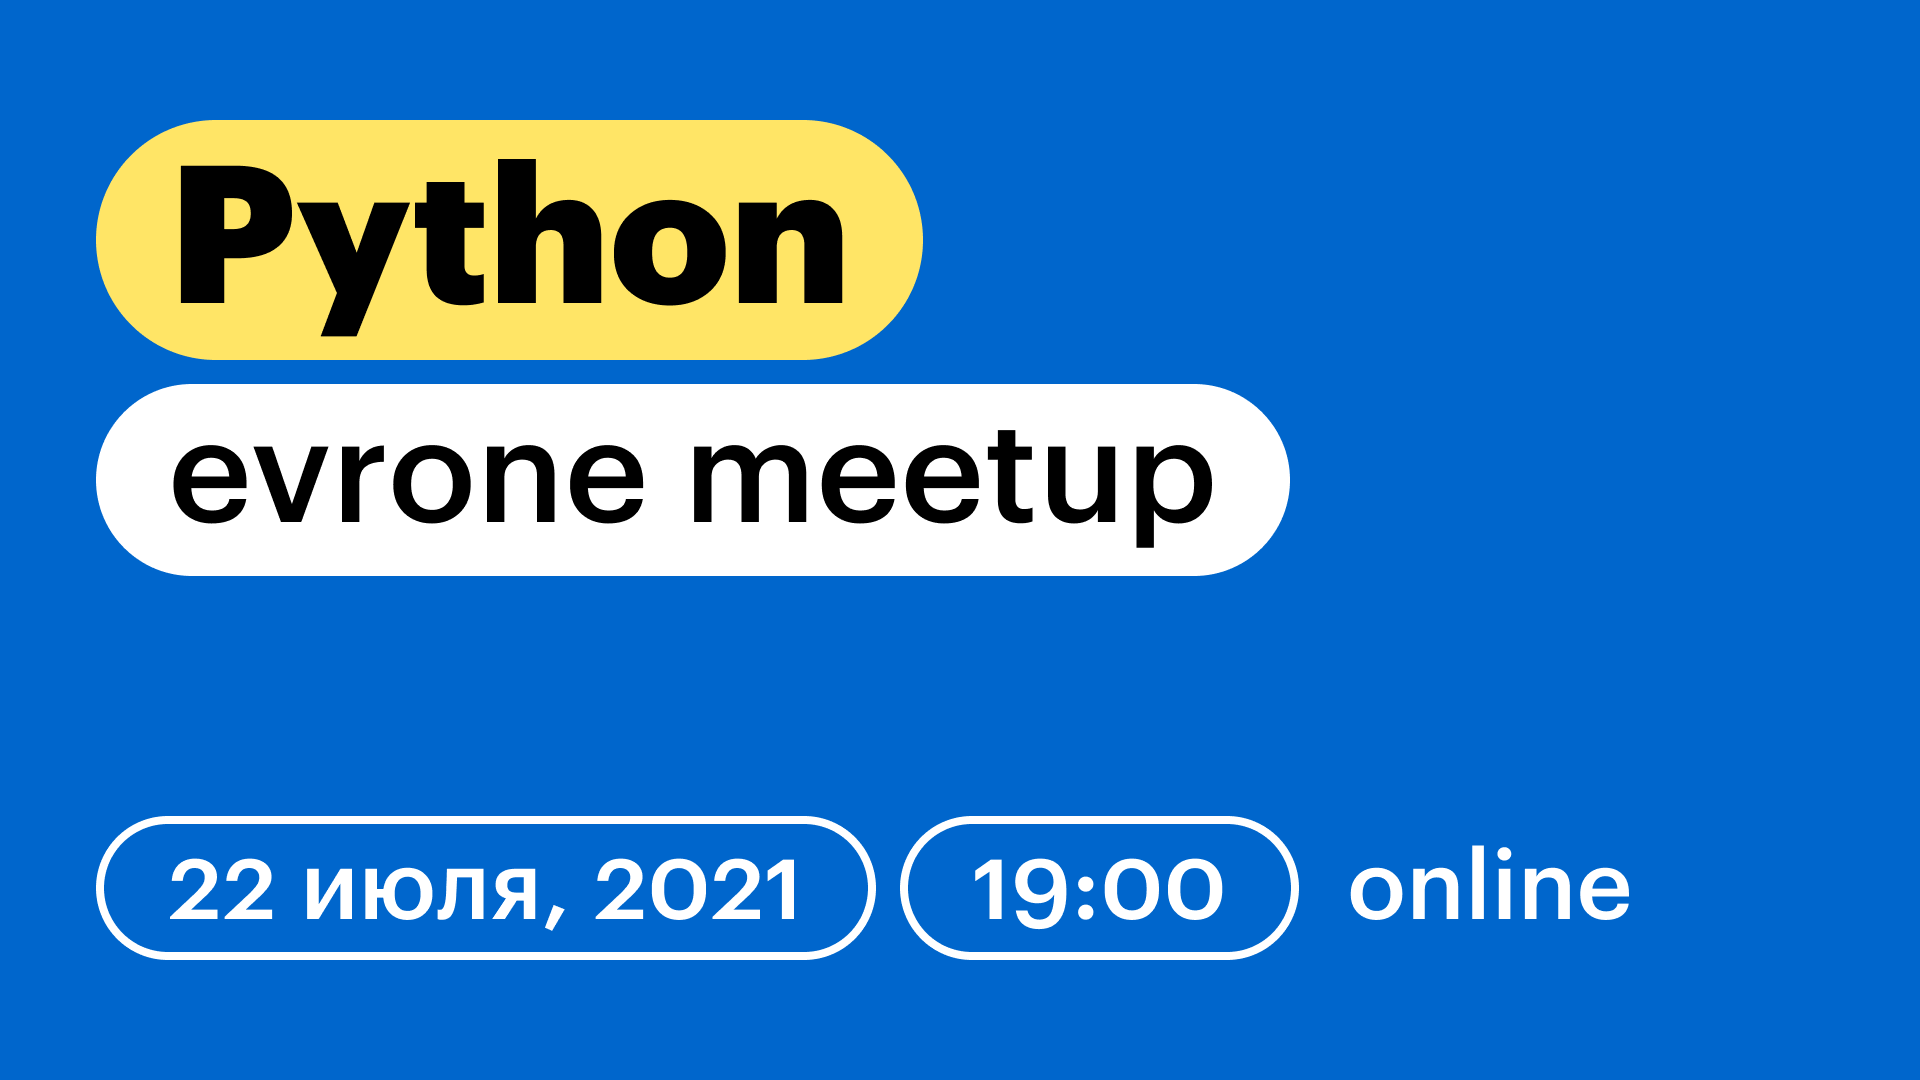 Python meetup от Evrone: роботы, производительность, запредельная скорость